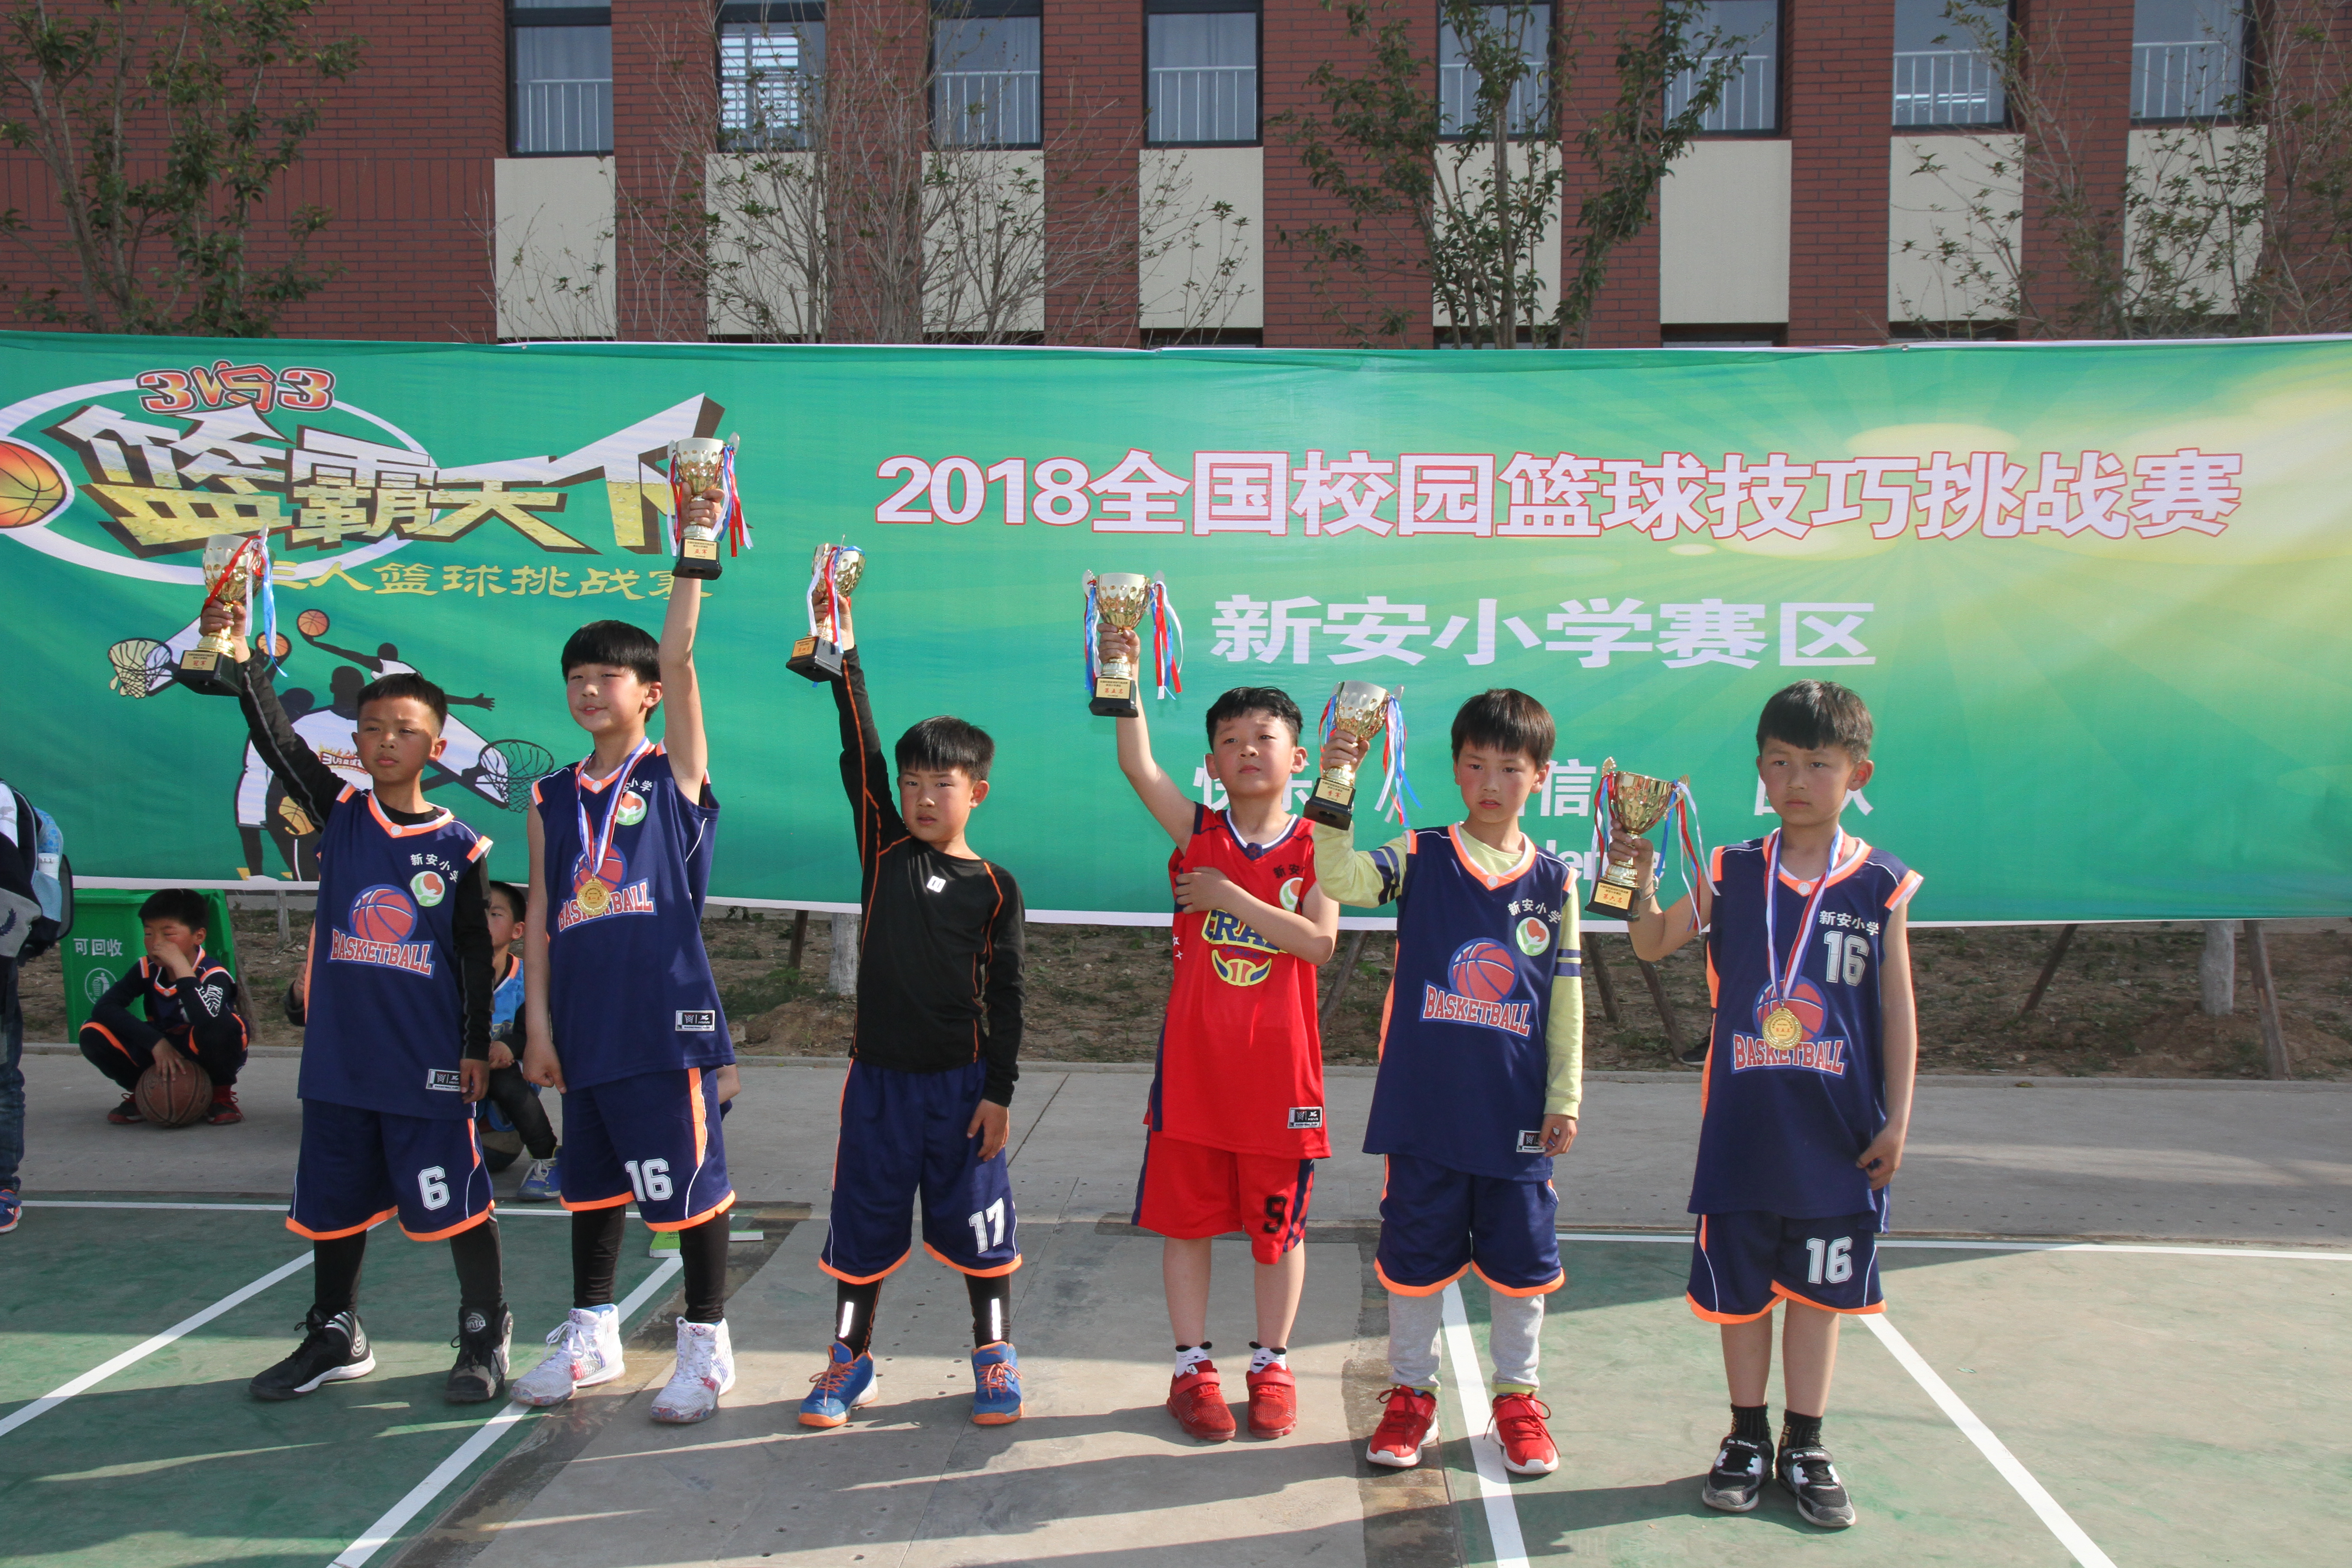 新安小学荣获全国校园篮球技巧挑战赛最佳组织奖